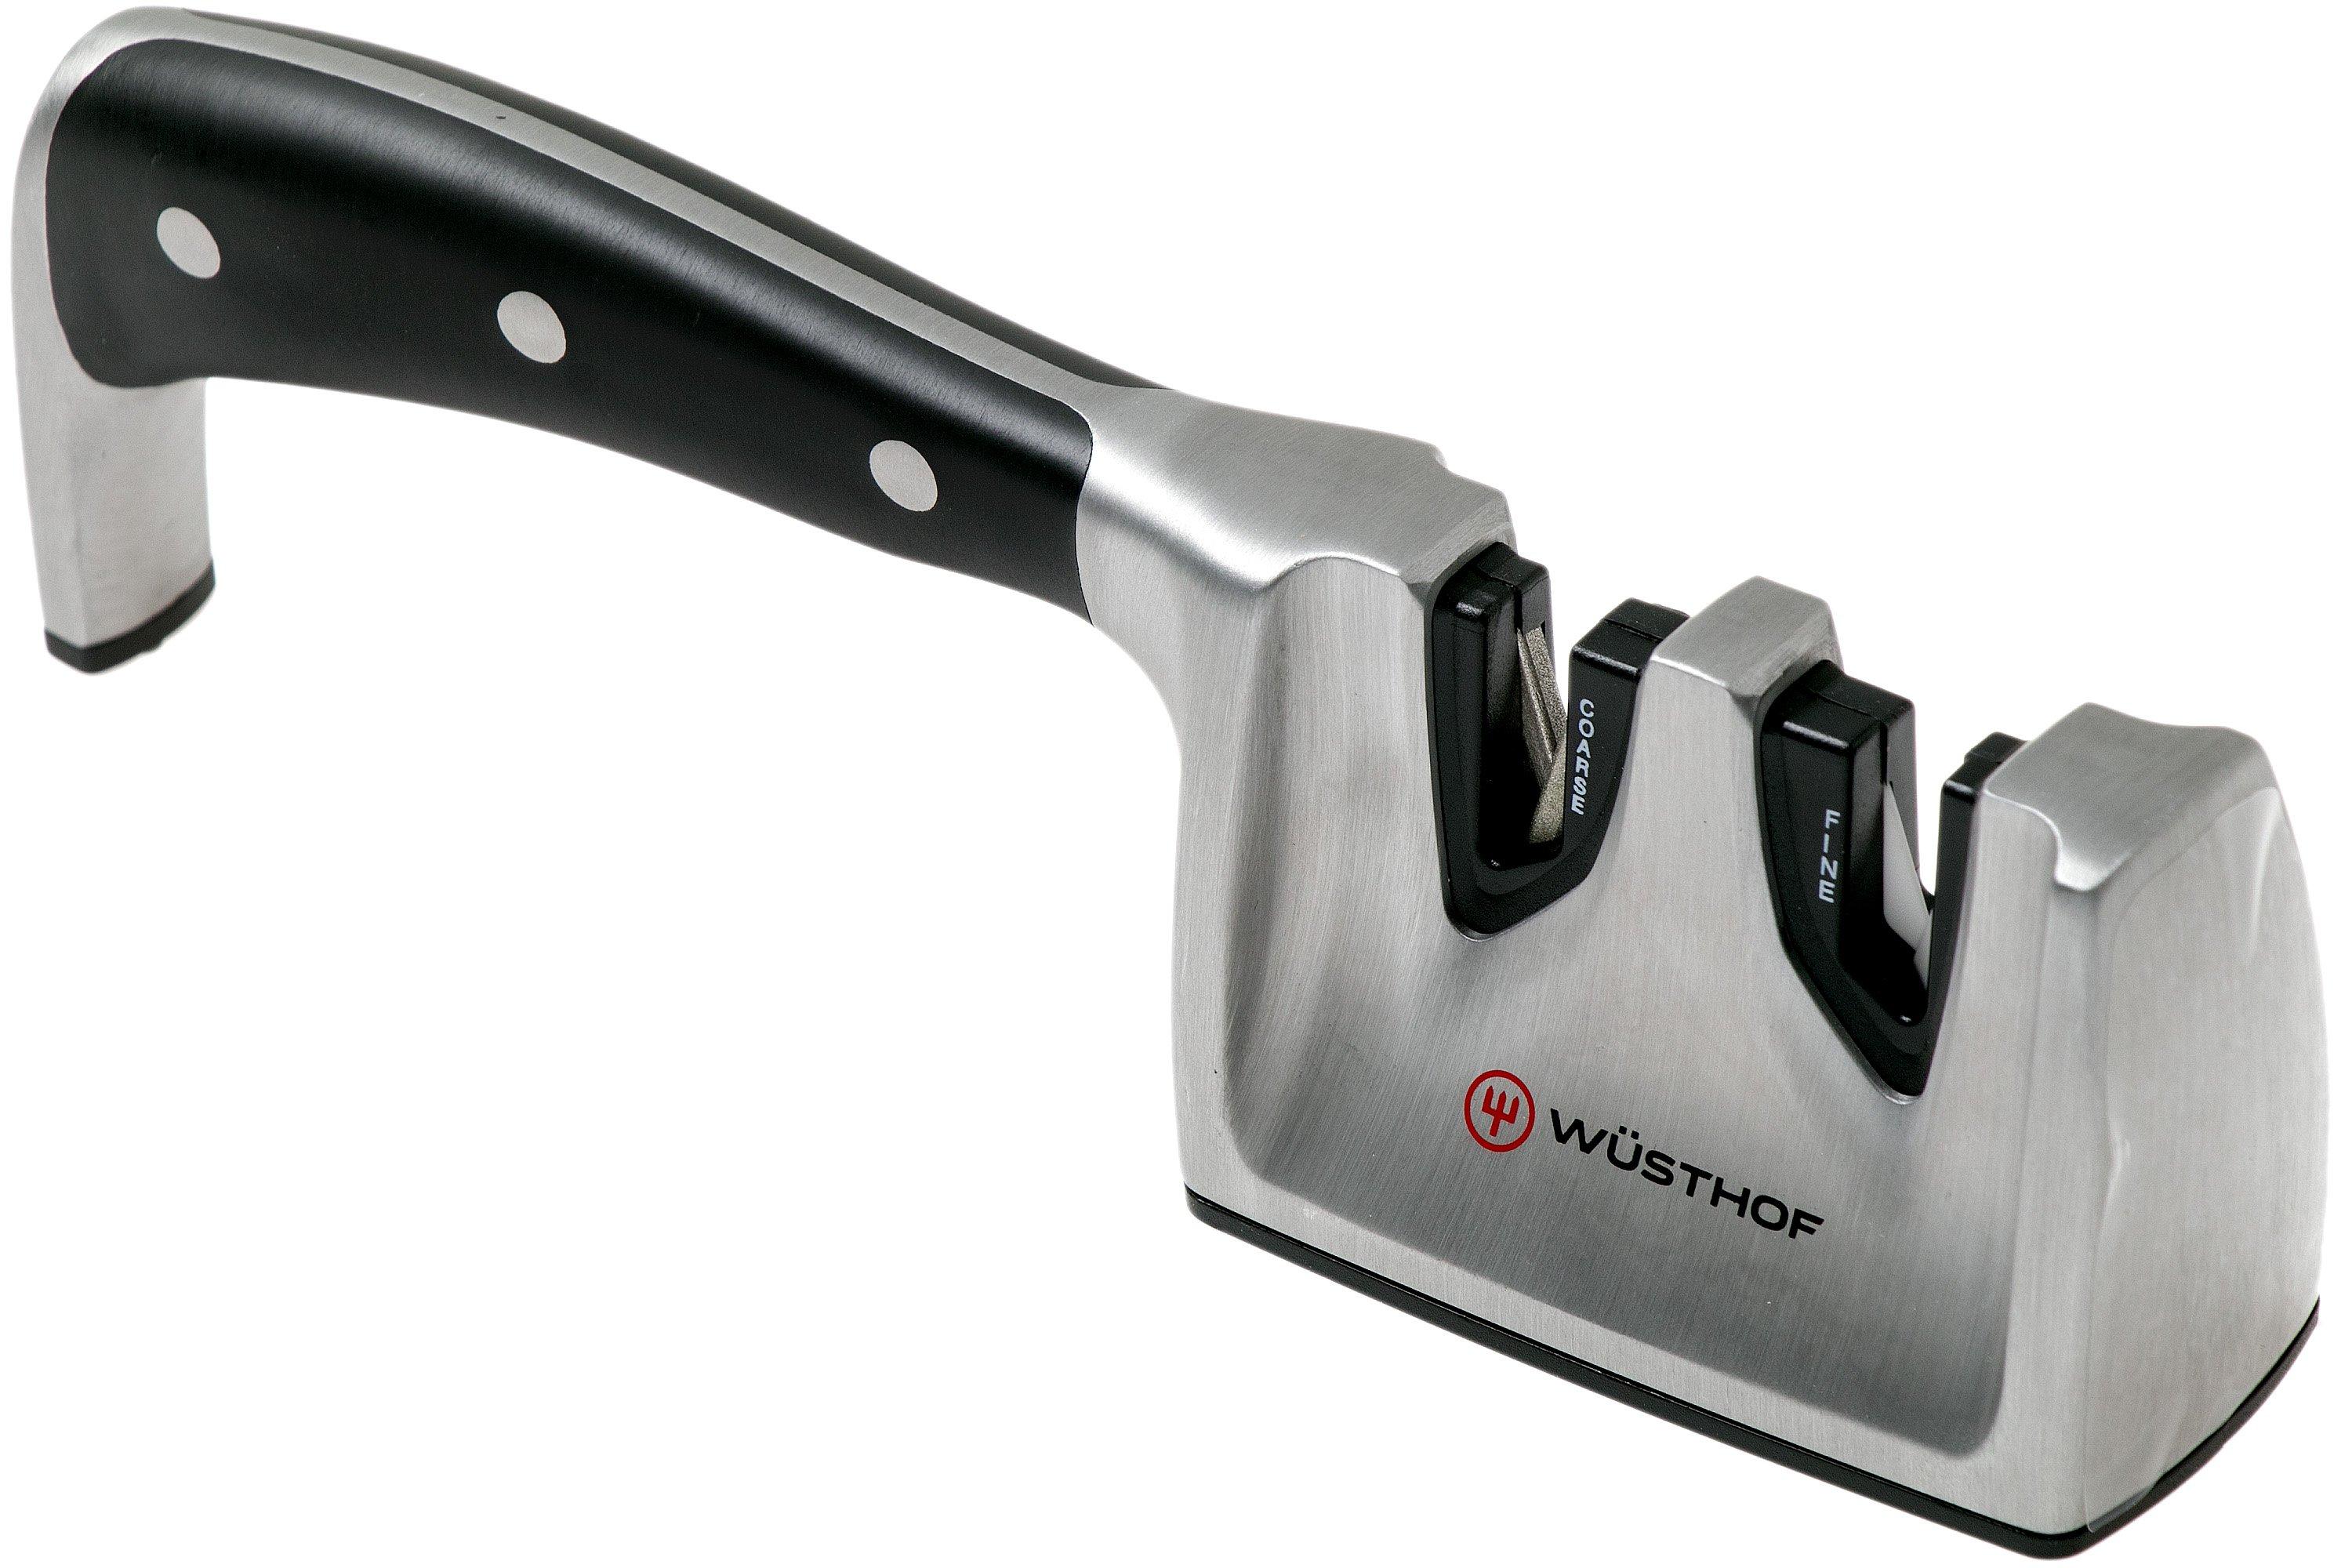 Wusthof knife sharpener review